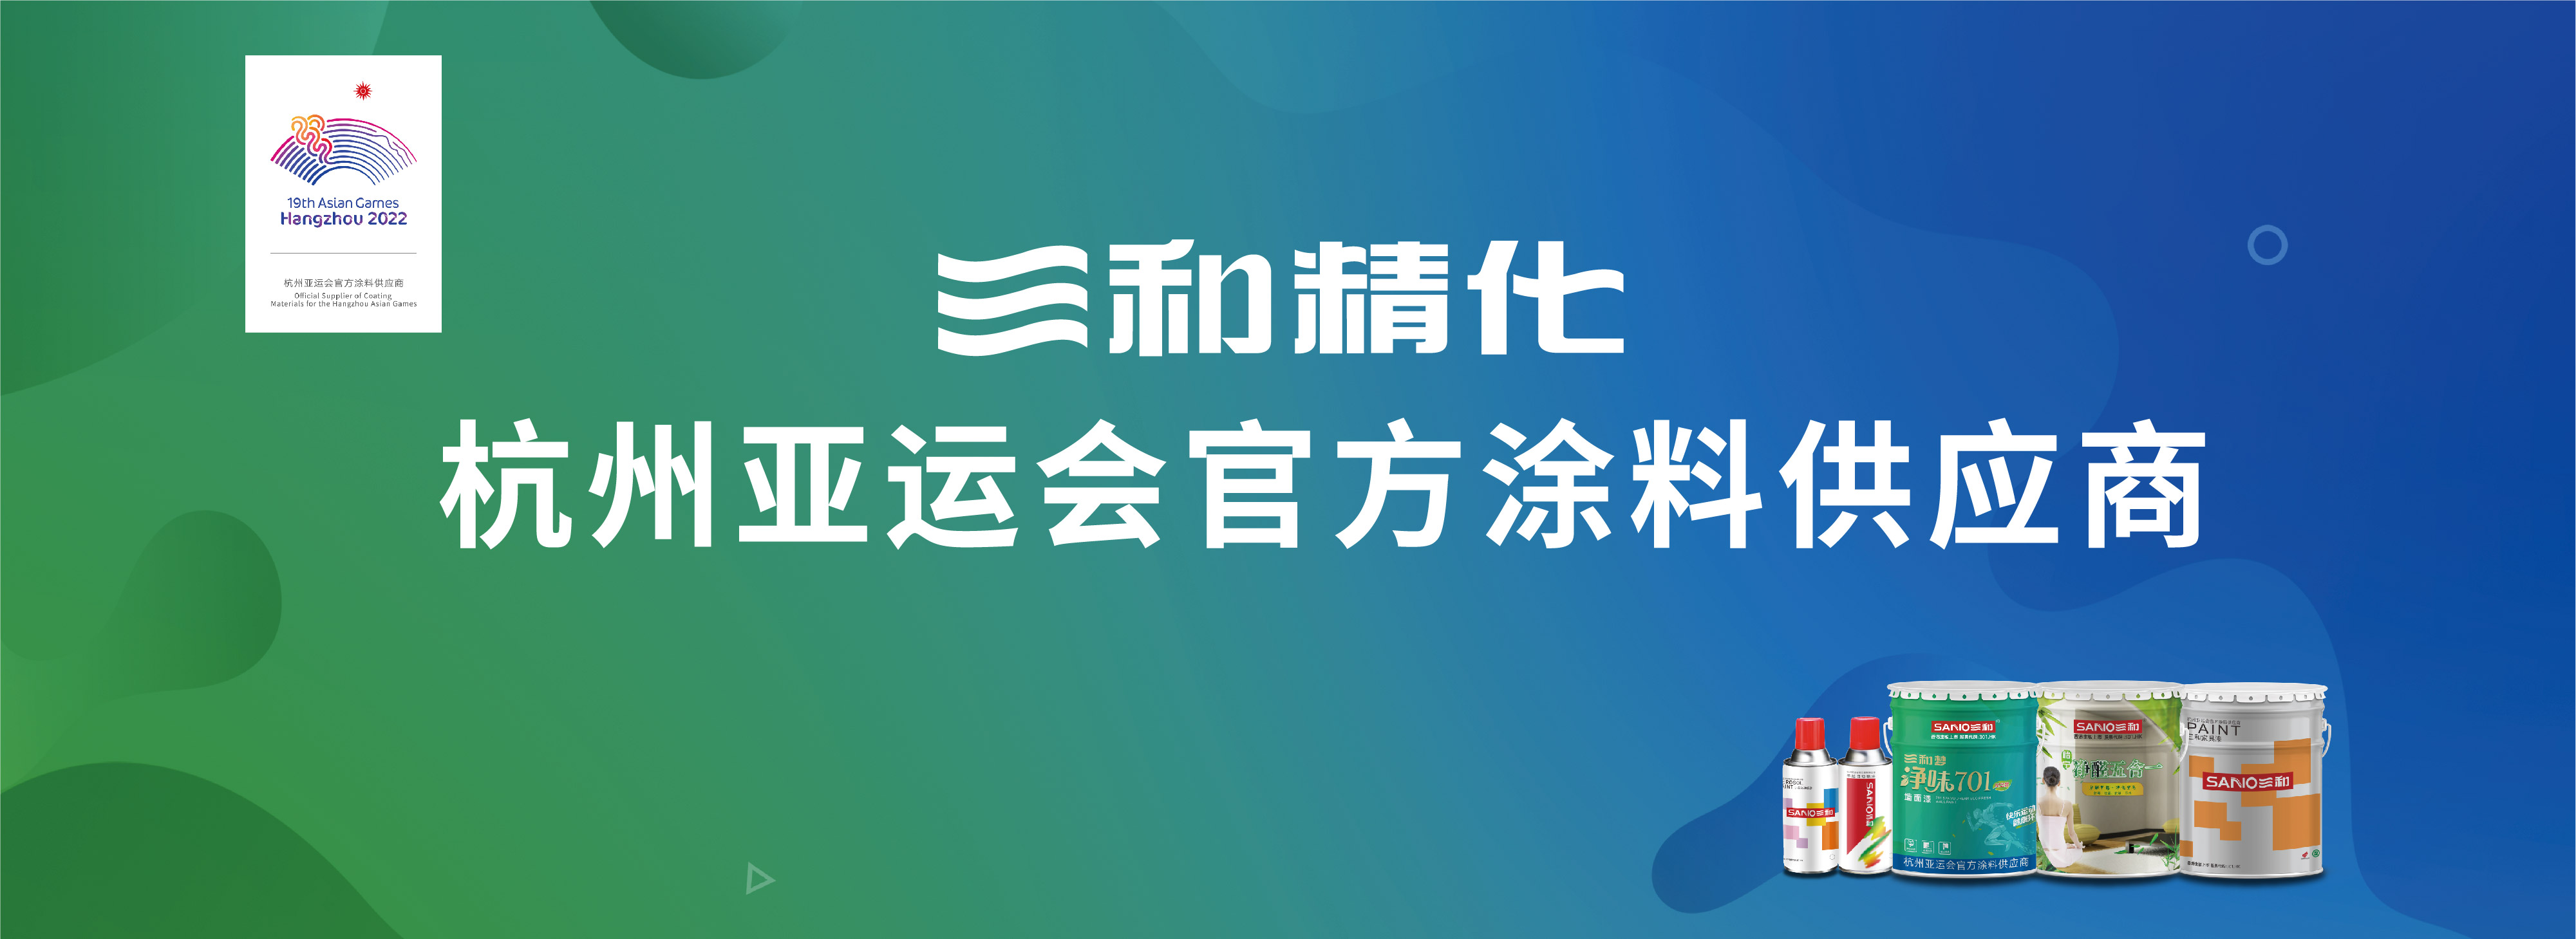 三和精化成为杭州亚运会官方涂料供应商